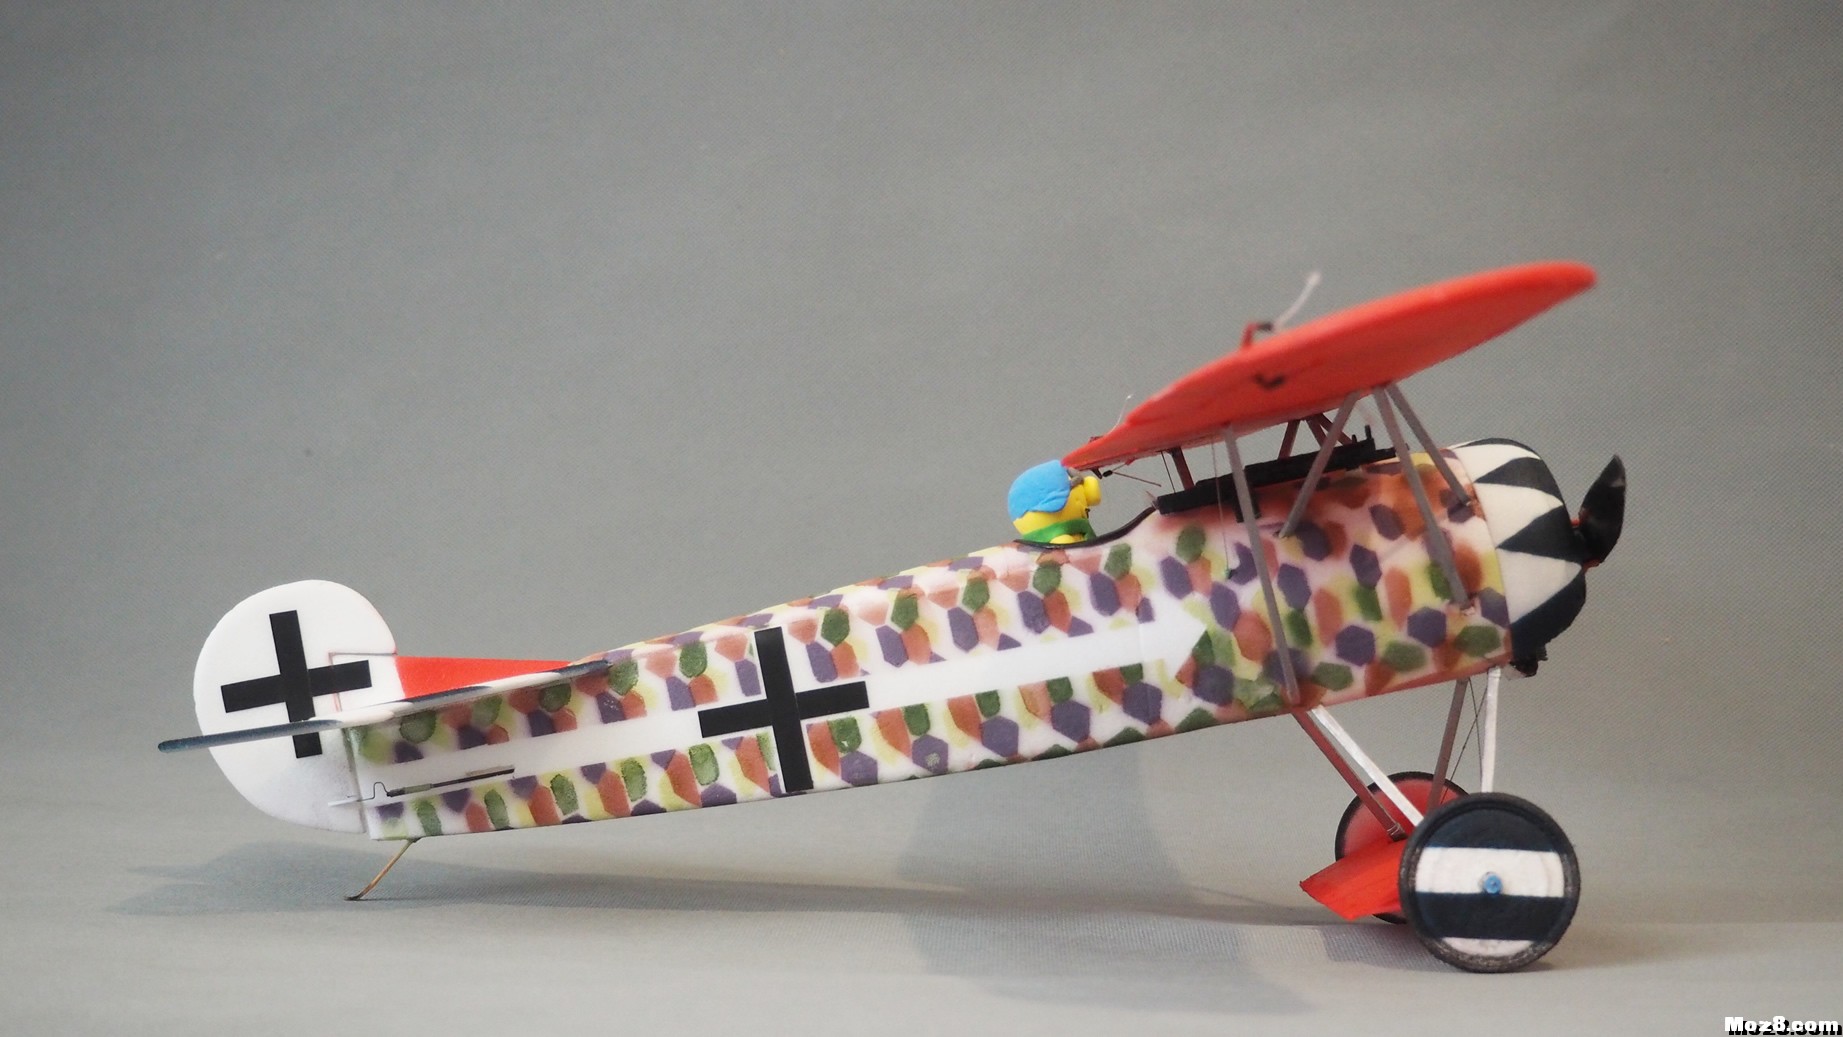 【爱因制造】迷你Fokker D-VIII战机 舵机,接收机,空心杯,bilibili,视频 作者:xbnlkdbxl 403 